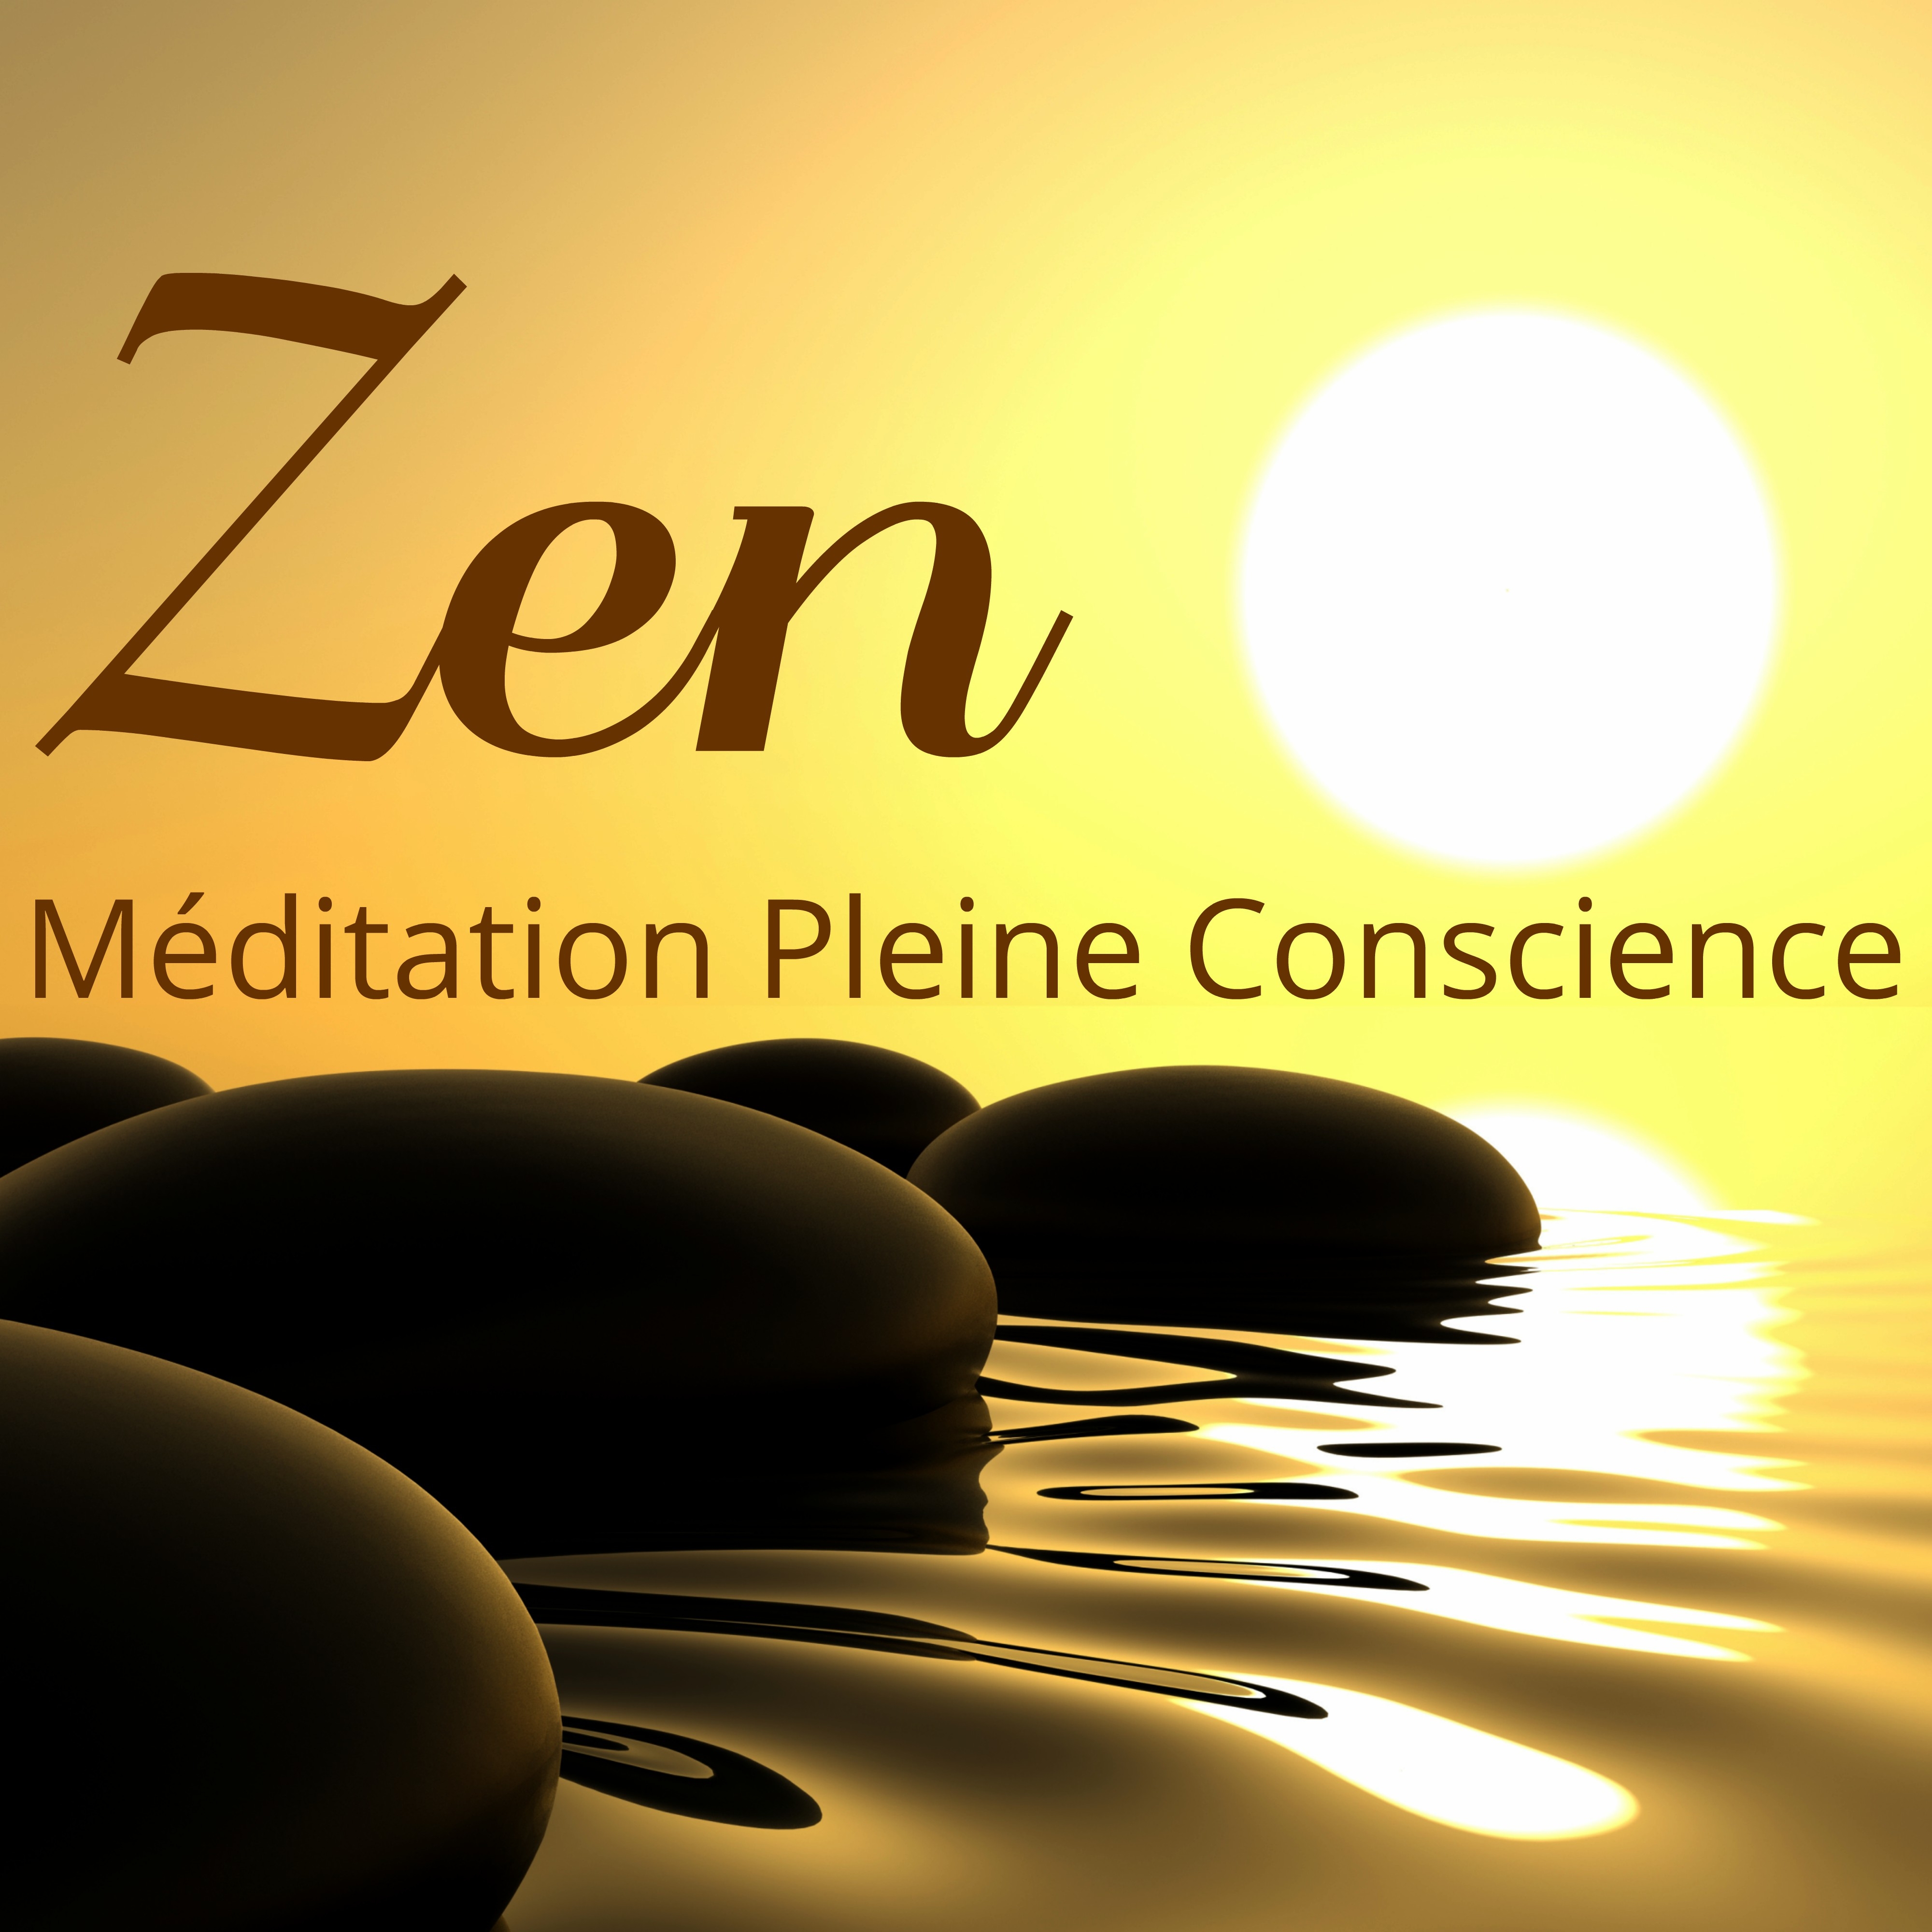 Zen  Me ditation Pleine Conscience: Musique Buddha Zen Spa pour Me ditation Profond, Yoga, Contemplation et Relaxation